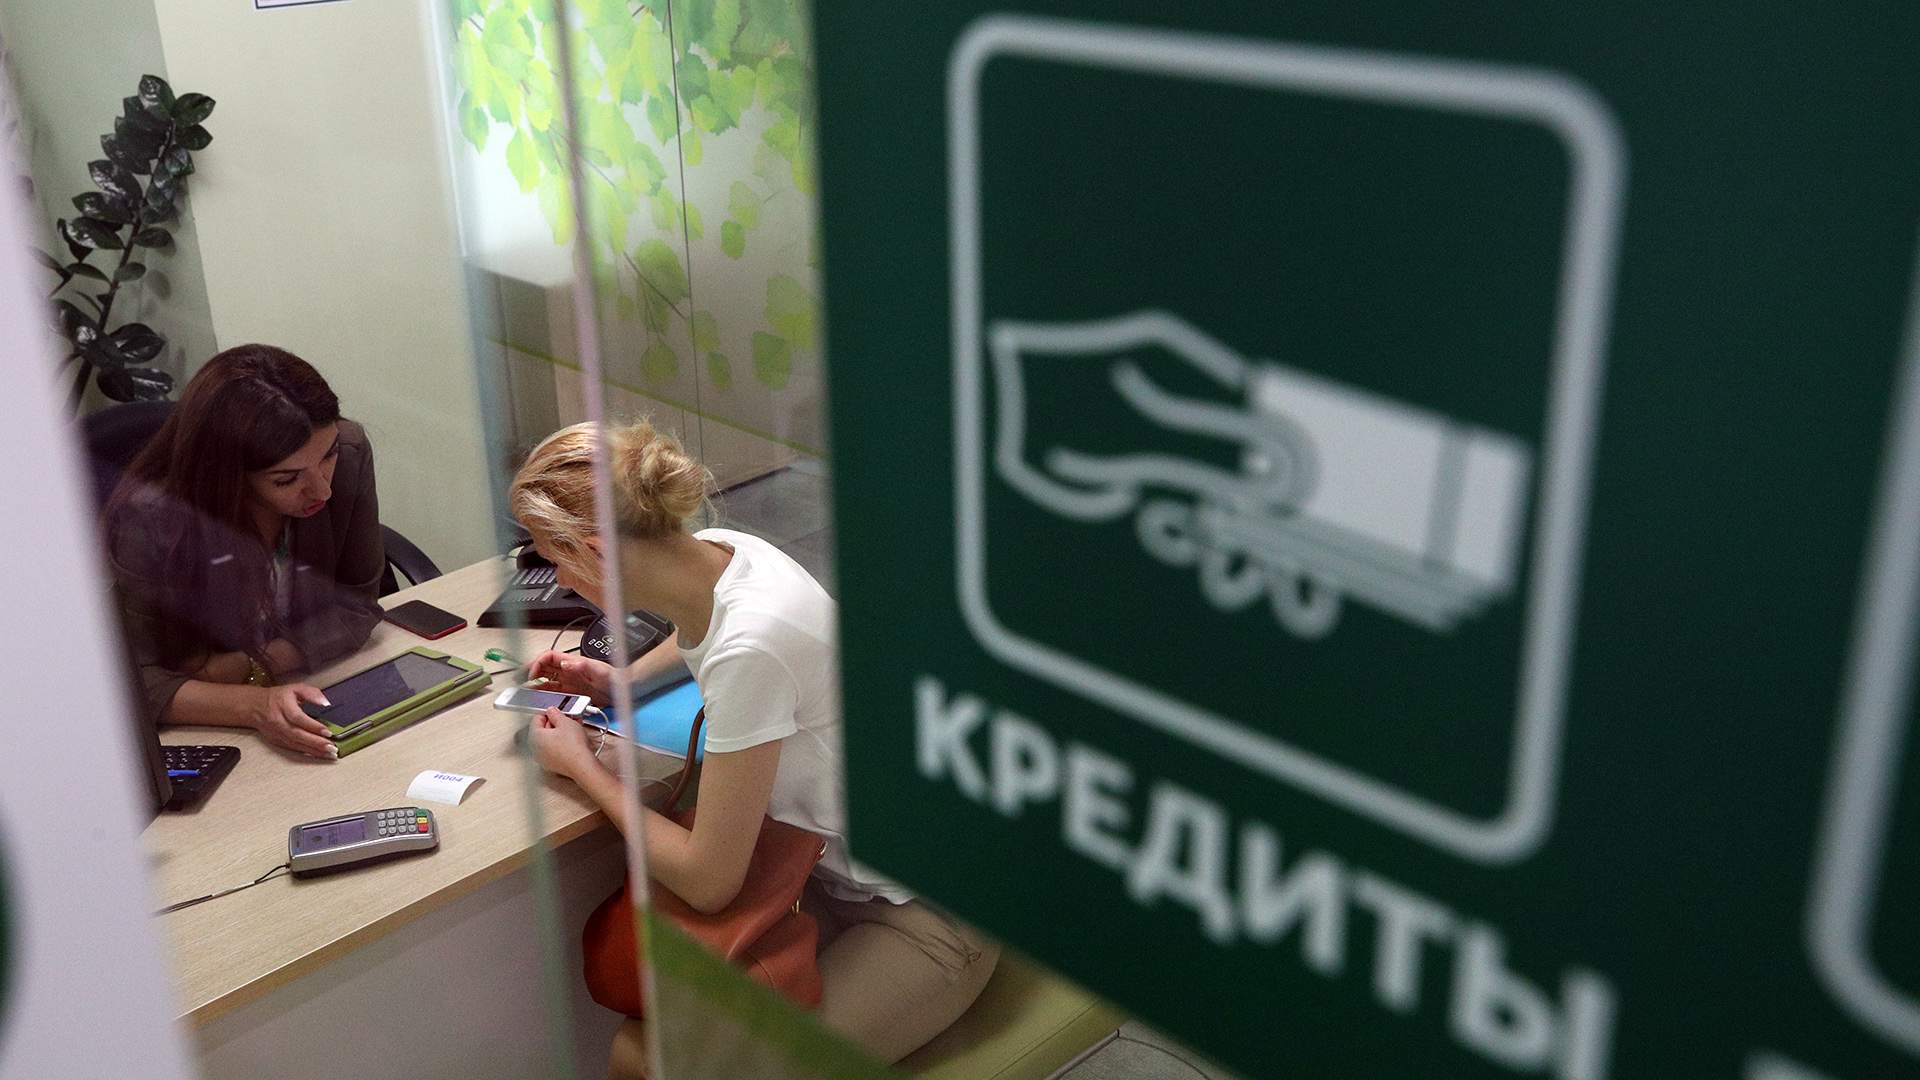 Ярославцы жалуются на мошенничество при оформлении займов и навязывание услуг ✓ Новости Рыбинска и не только